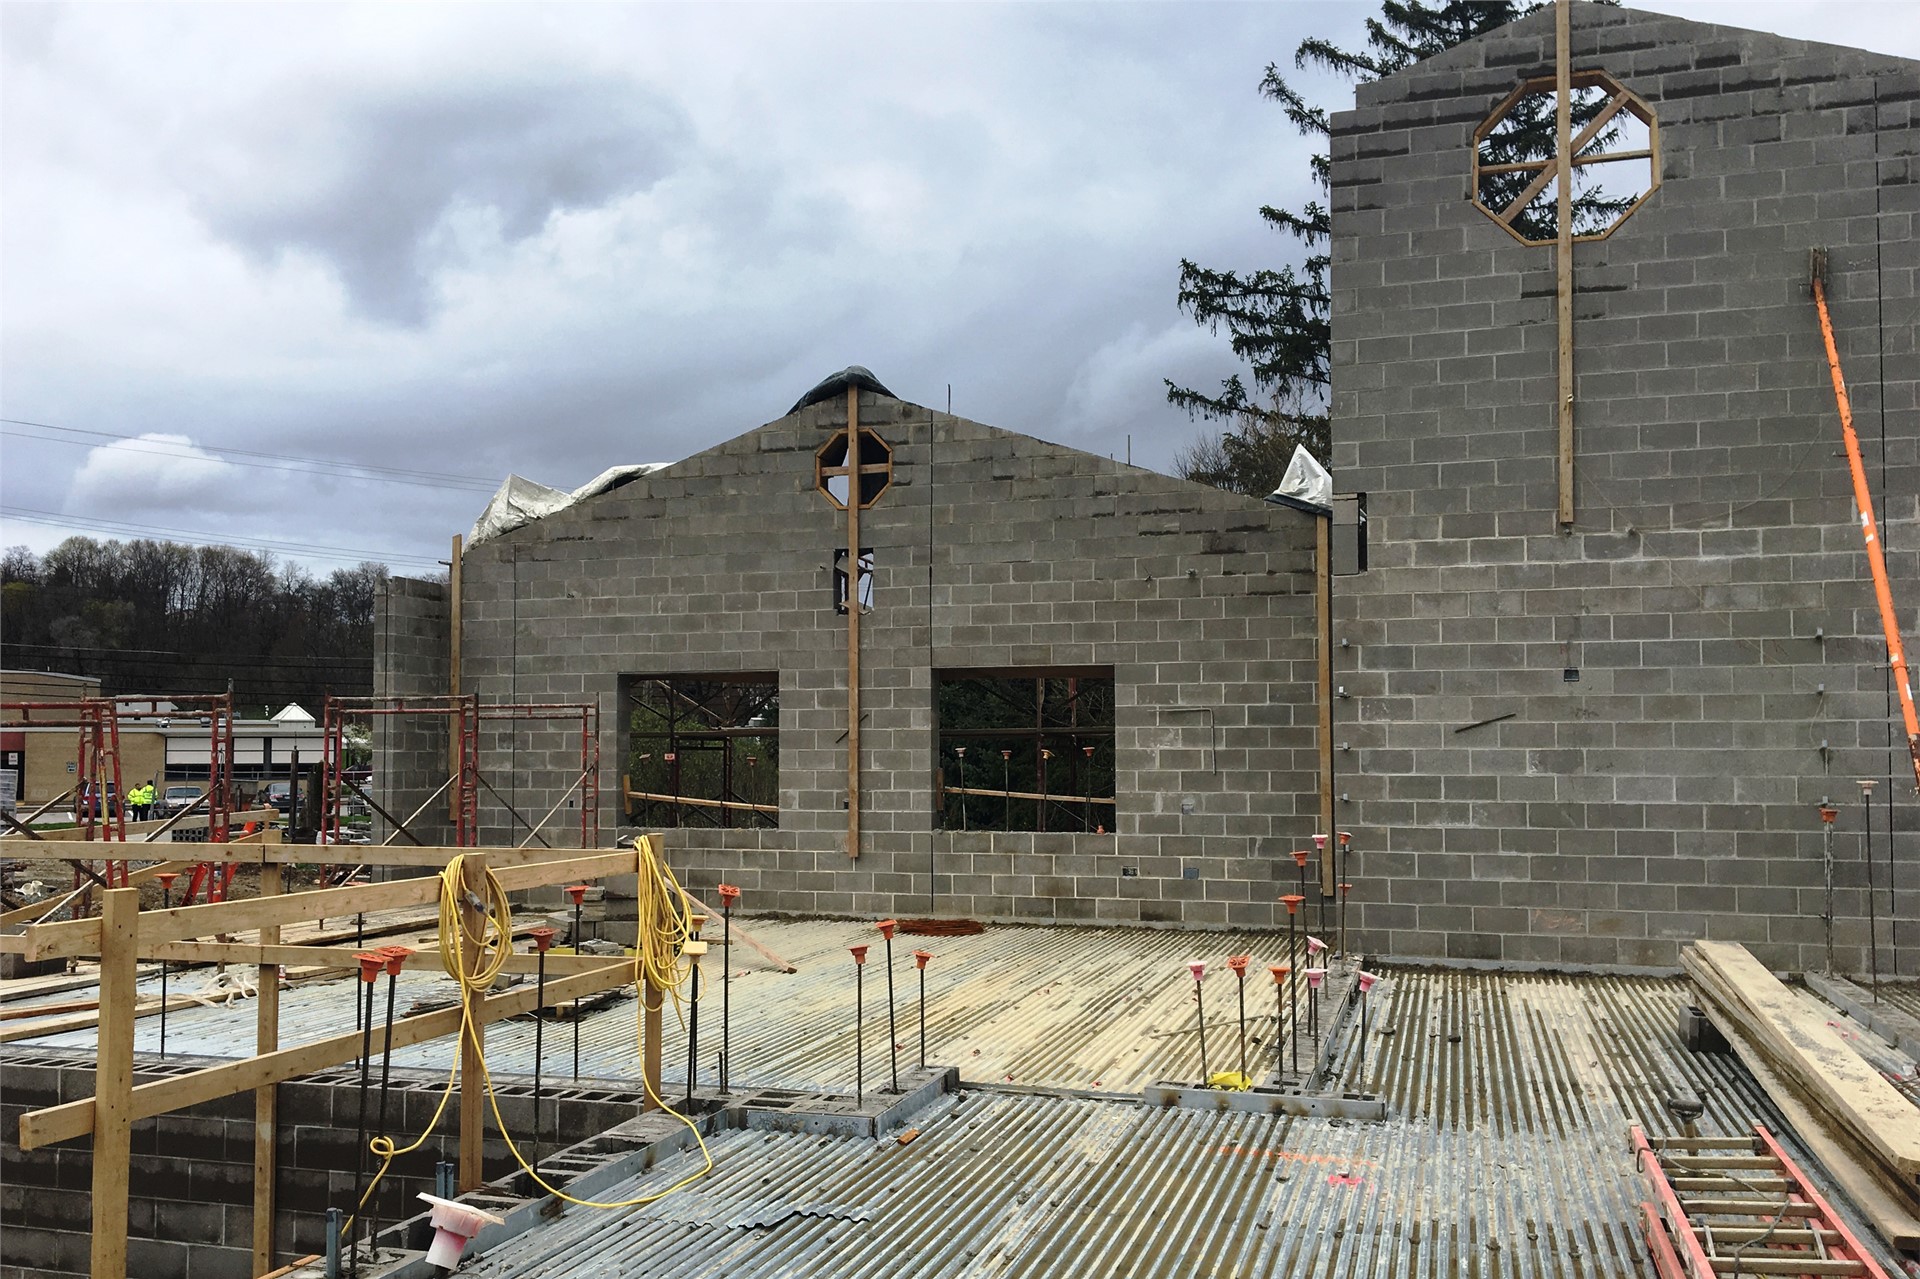 New school construction site: Concrete walls